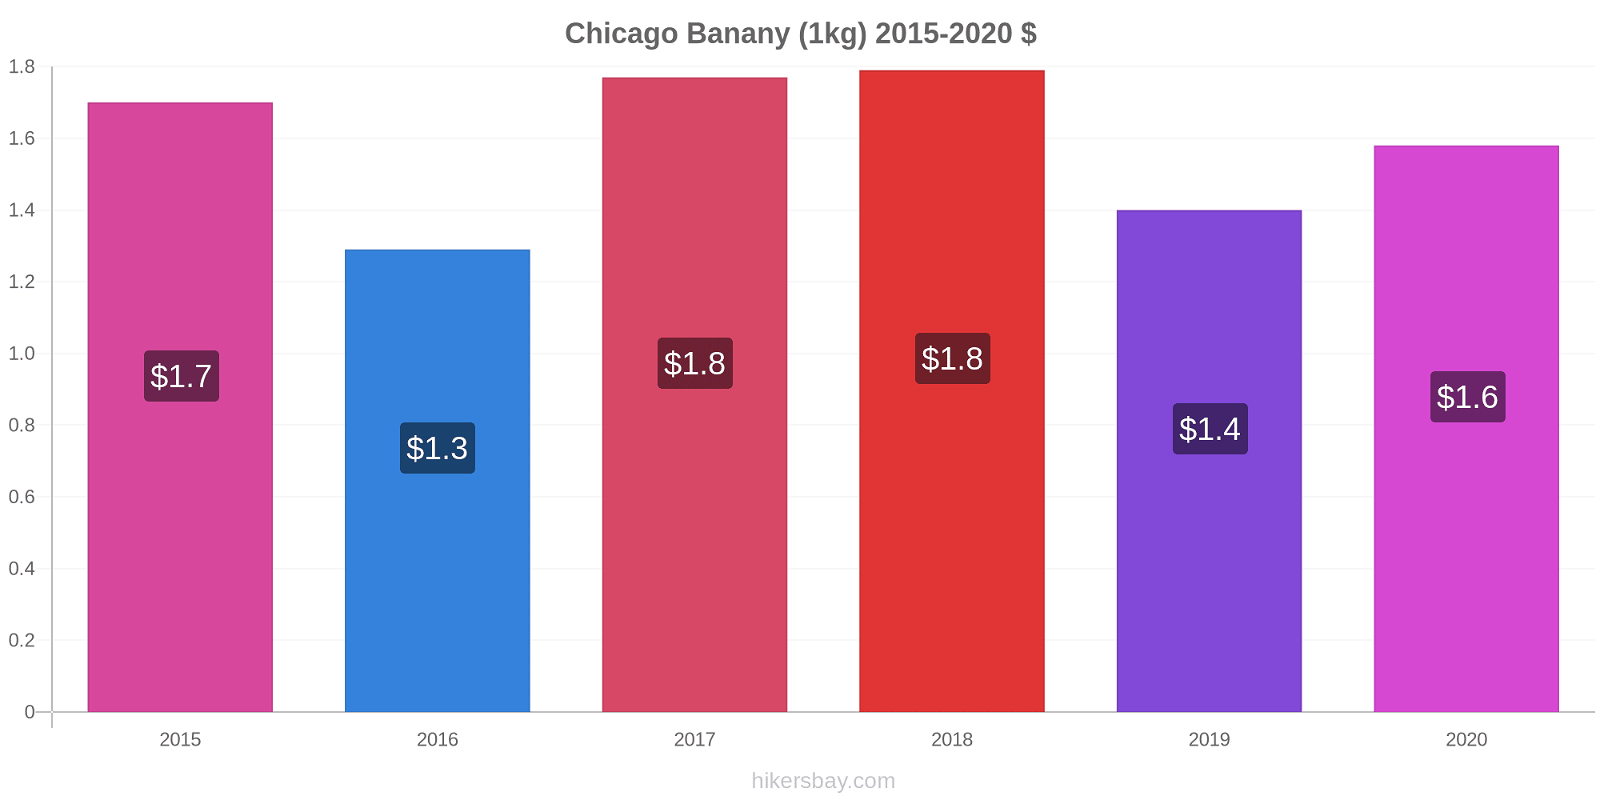 Chicago zmiany cen Banany (1kg) hikersbay.com